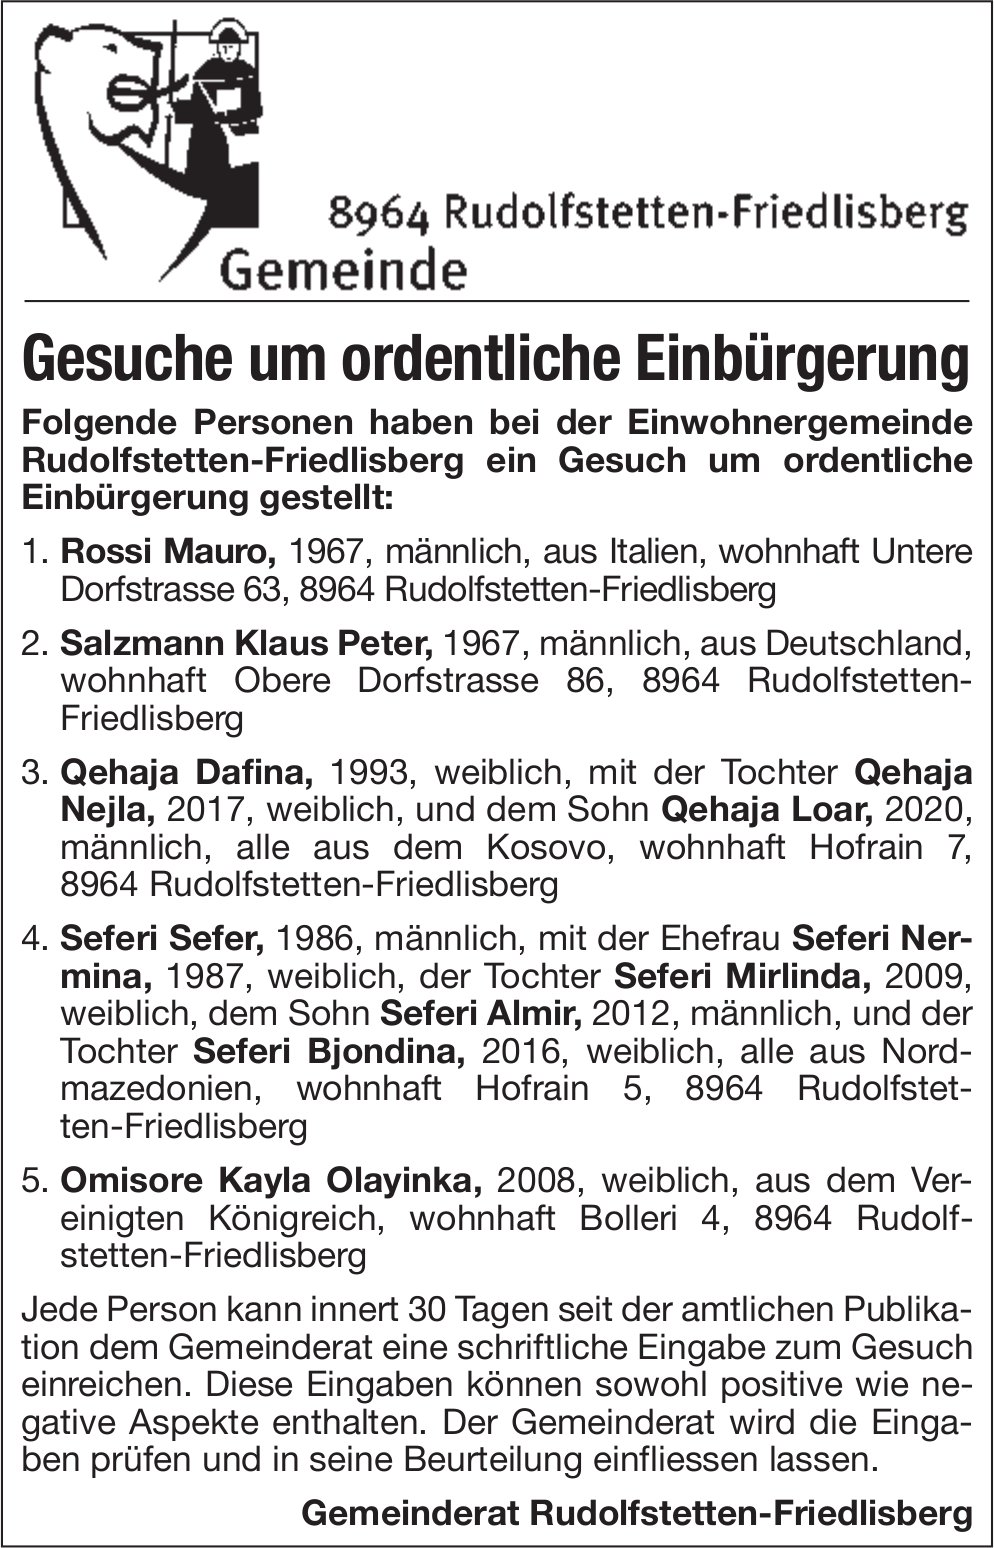 Rudolfstetten-Friedlisberg - Gesuche um ordentliche Einbürgerung